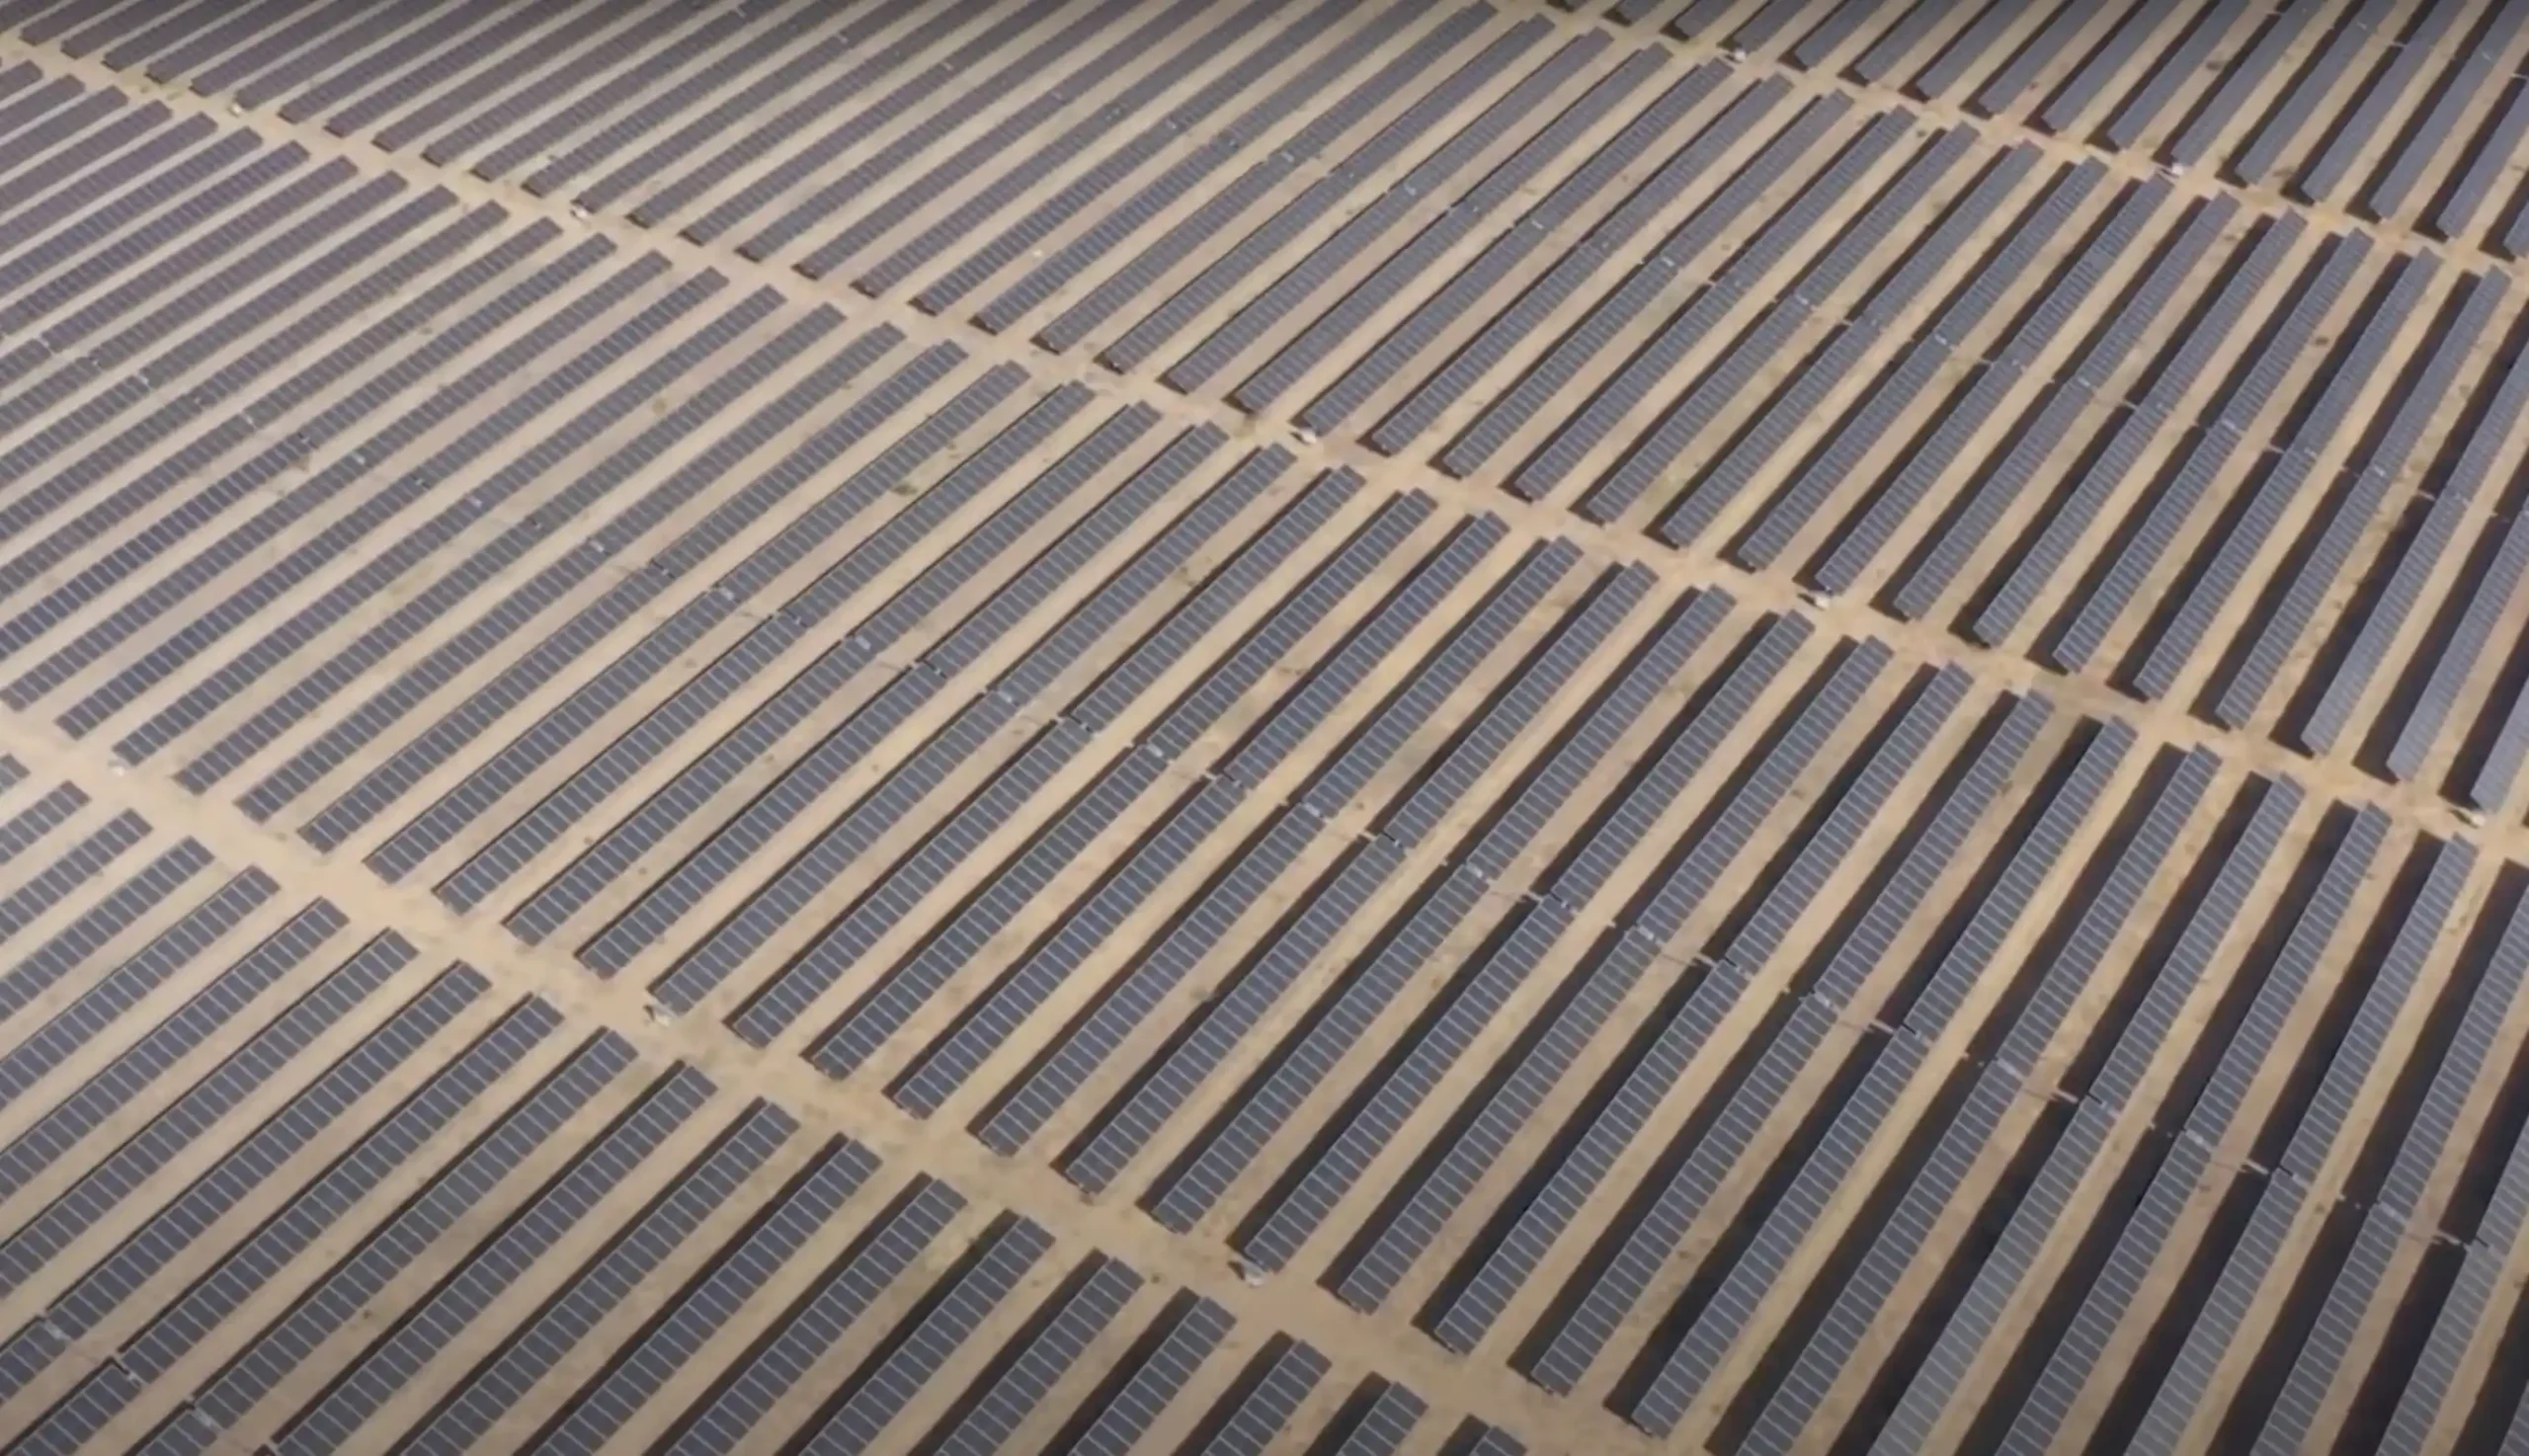 Usina solar fotovoltaica Sol do Sertão, da Essentia Energia, em Oliveira dos Brejinhos (BA). Crédito: Reprodução